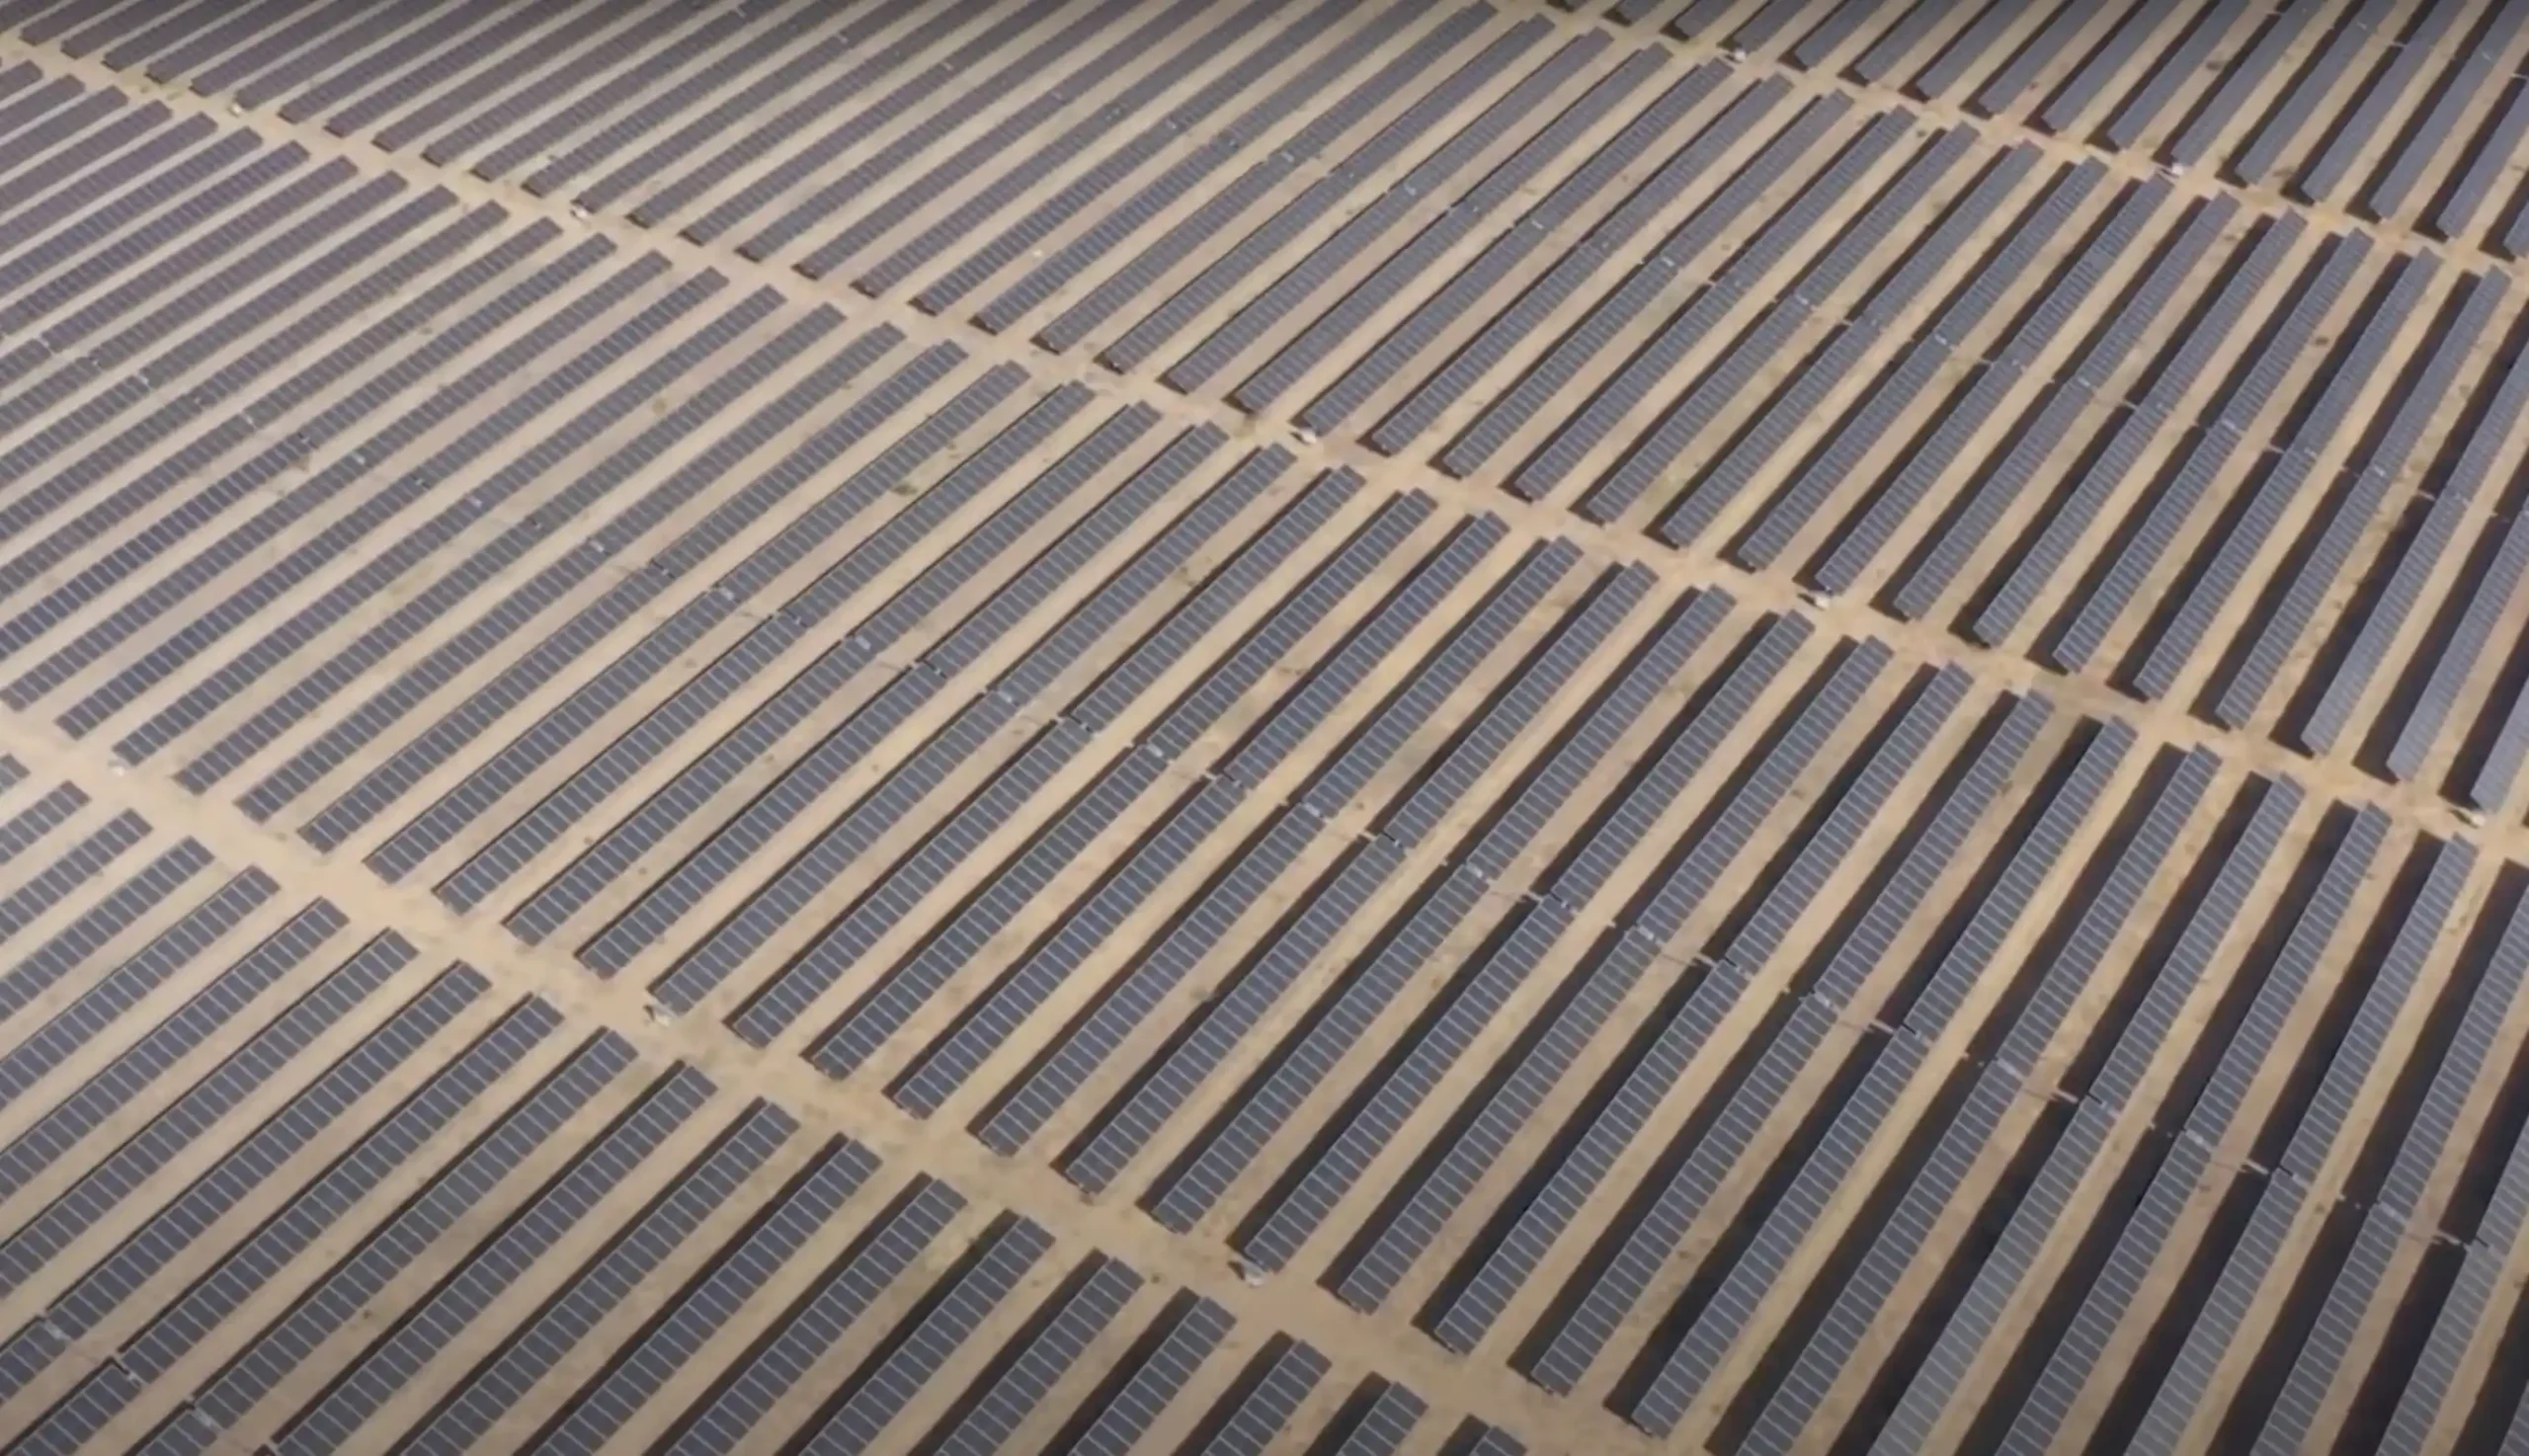 Usina solar fotovoltaica Sol do Sertão, da Essentia Energia, em Oliveira dos Brejinhos (BA). Crédito: Reprodução